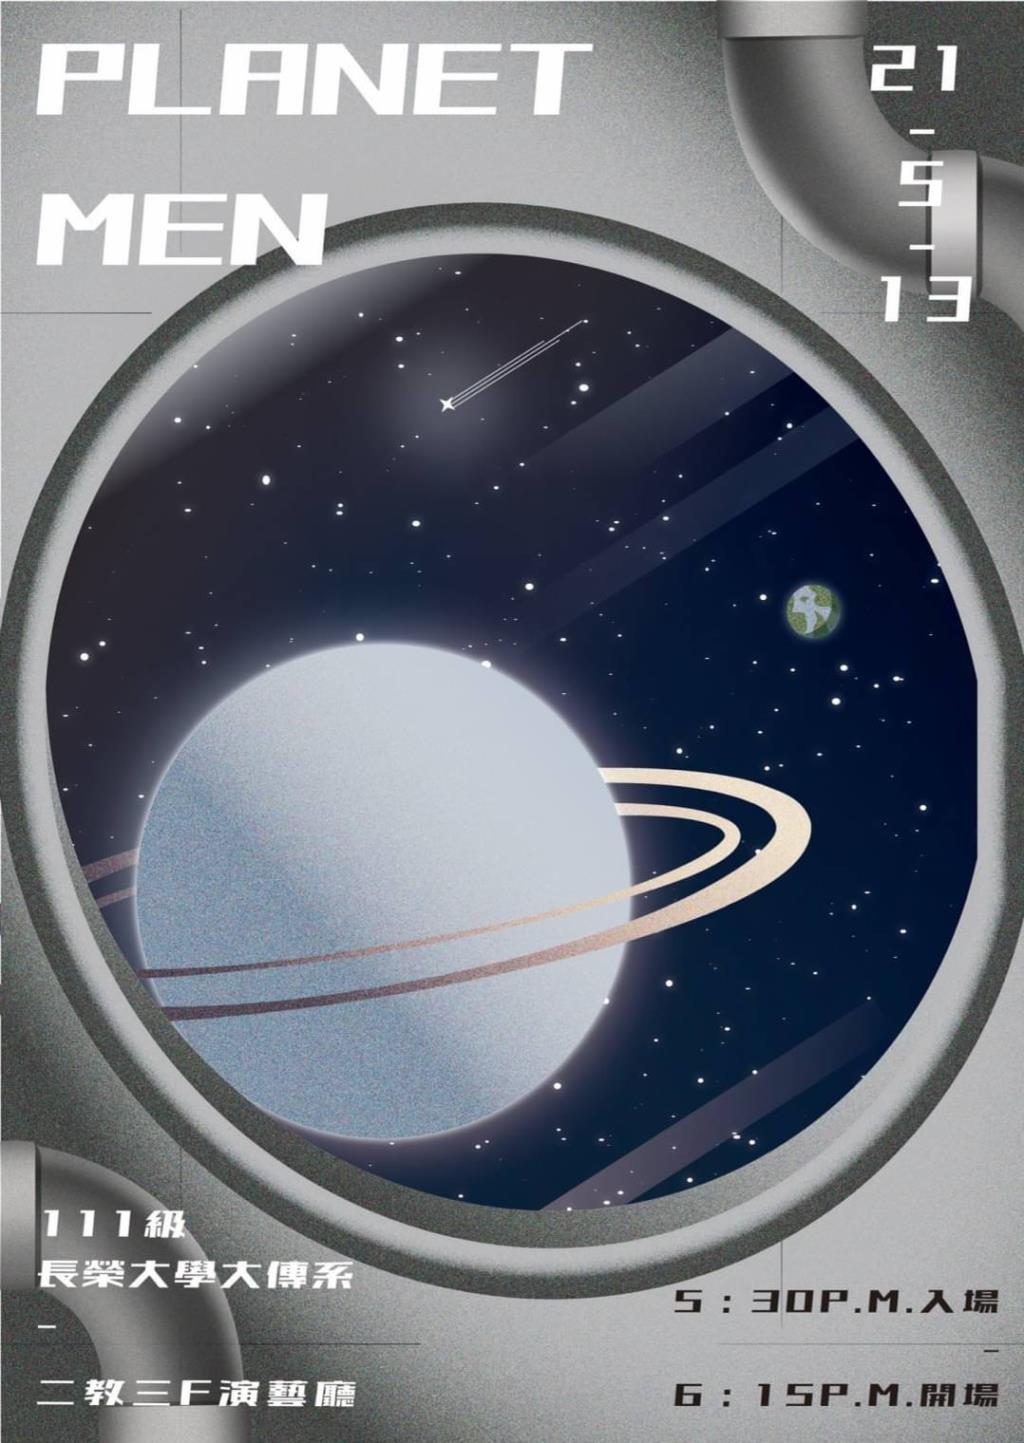 開啟一段探索宇宙之旅  大傳系年度舞台劇“Planet men”13日登場